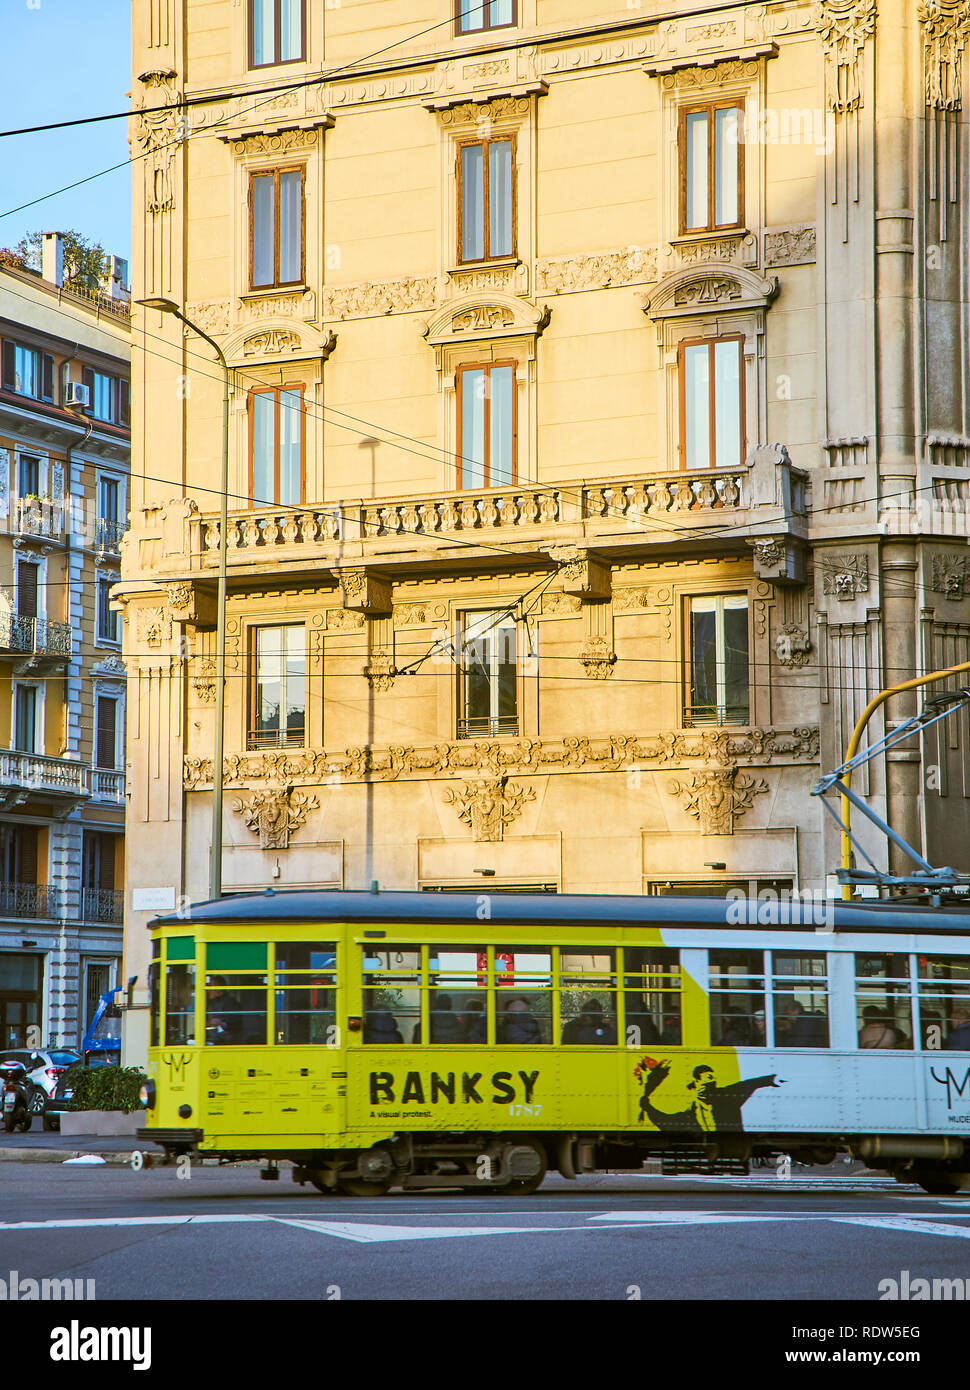 Eine Straßenbahn-Werbung eine monographische Ausstellung von Banksy Kreuzung der Via Giovanni Boccaccio, eine Straße der Zona Magenta Viertel in der Innenstadt von Mailand. Stockfoto